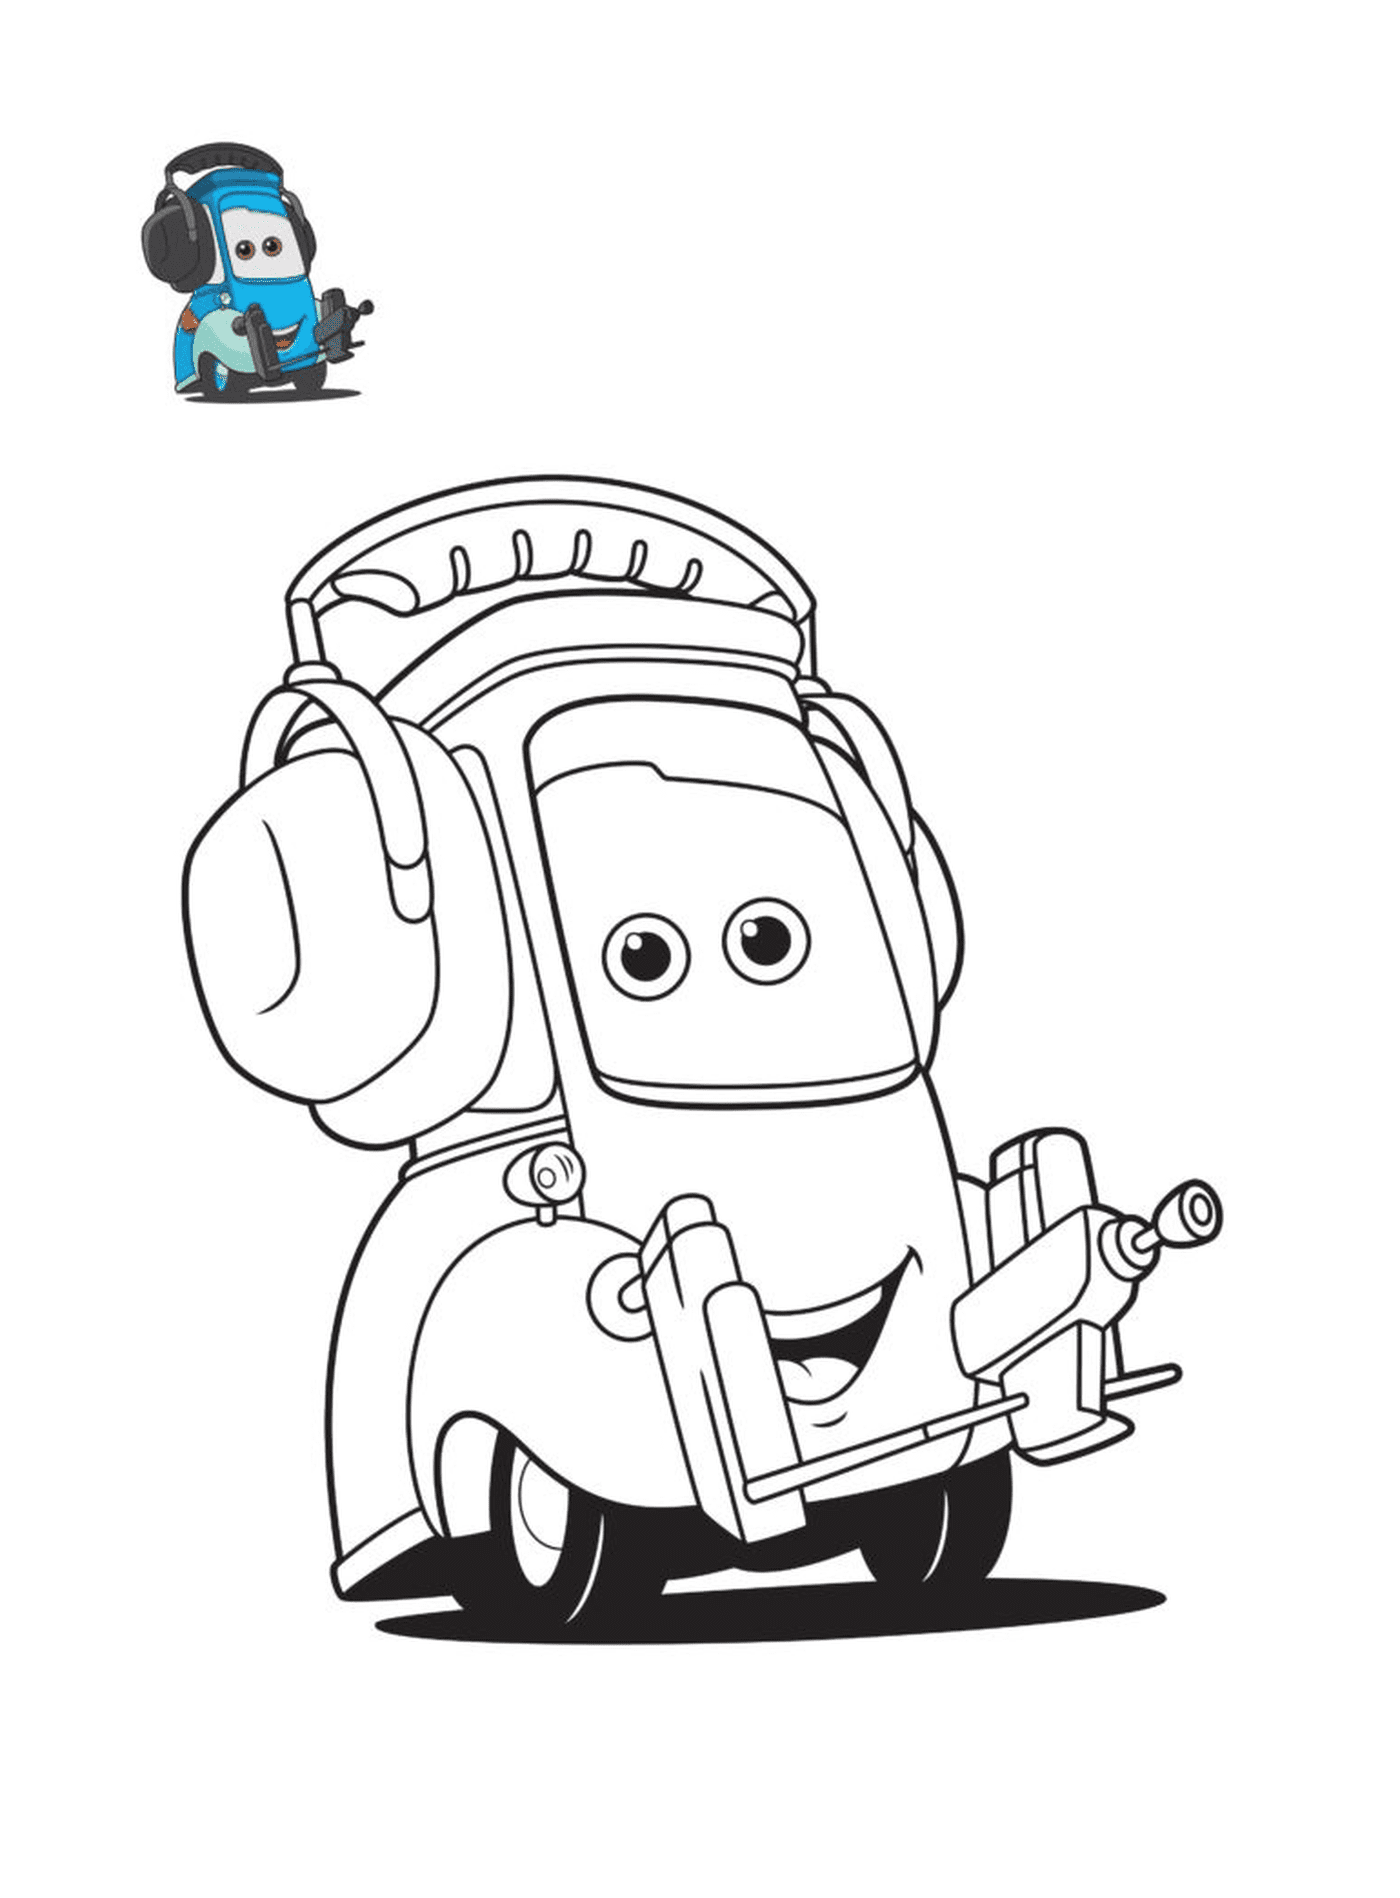  कार 3, गीडो, फिल्म कार्टूनों के चरित्र, सरफोन के साथ कार 